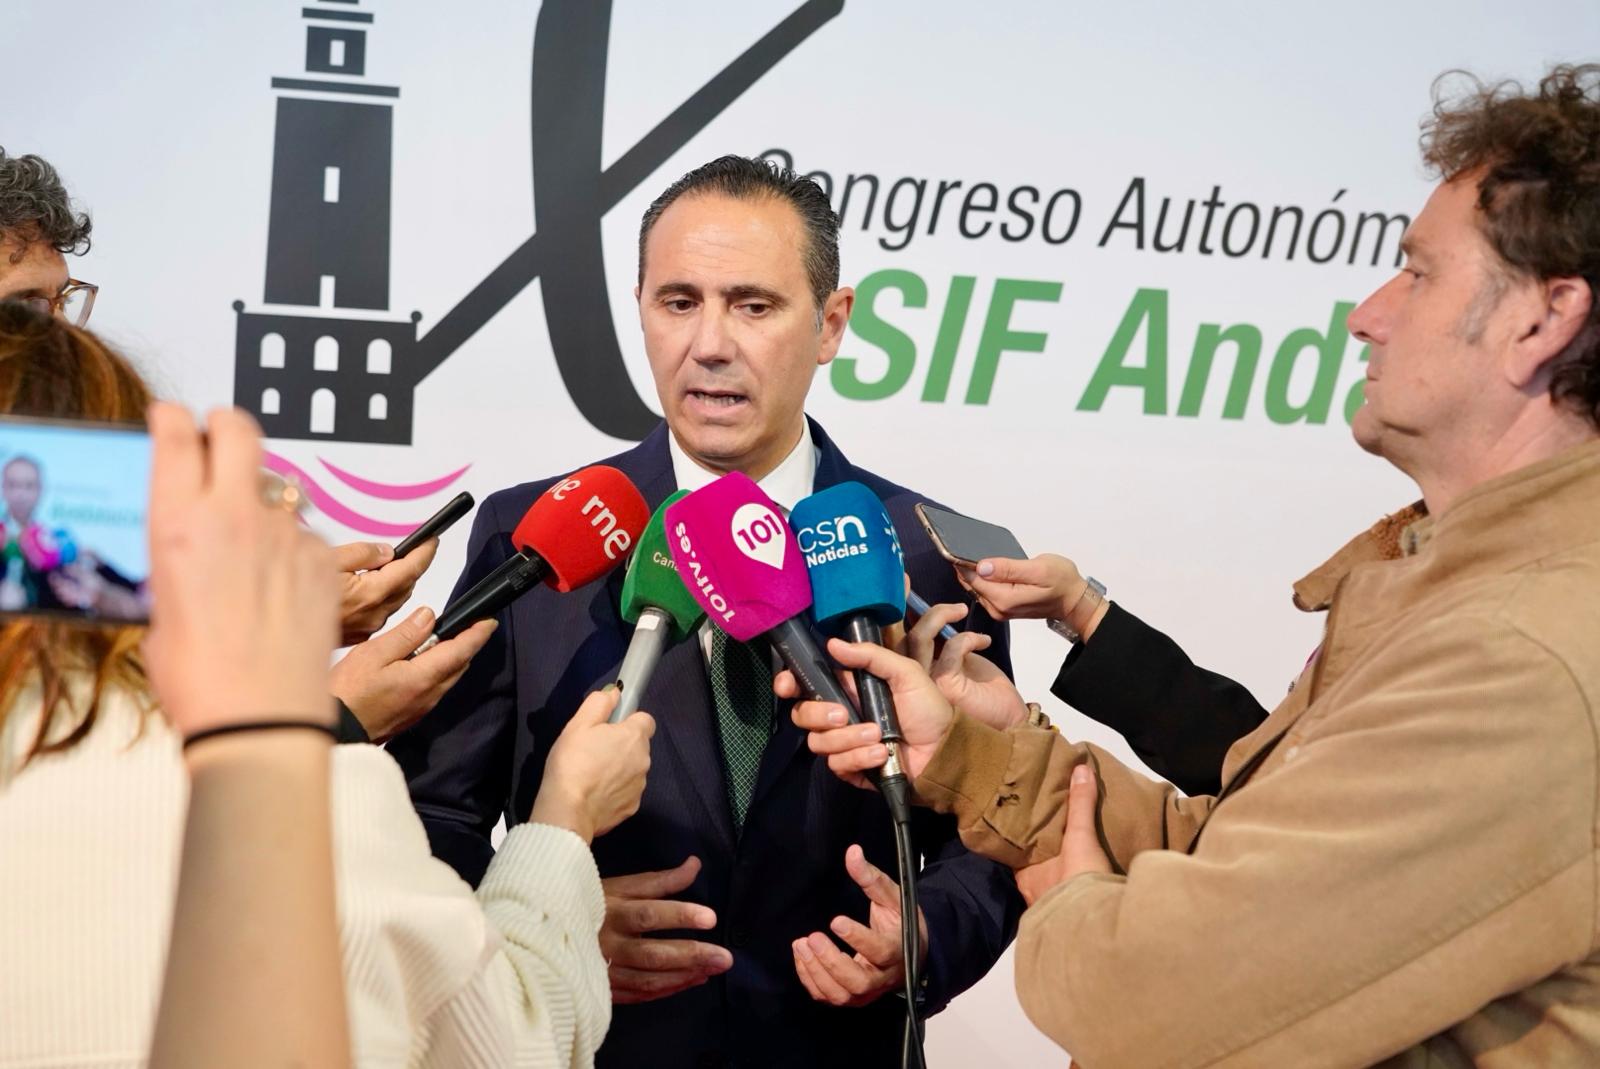 Germán Girela durante la atención a medios en el IX Congreso Autonómico de CSIF Andalucía